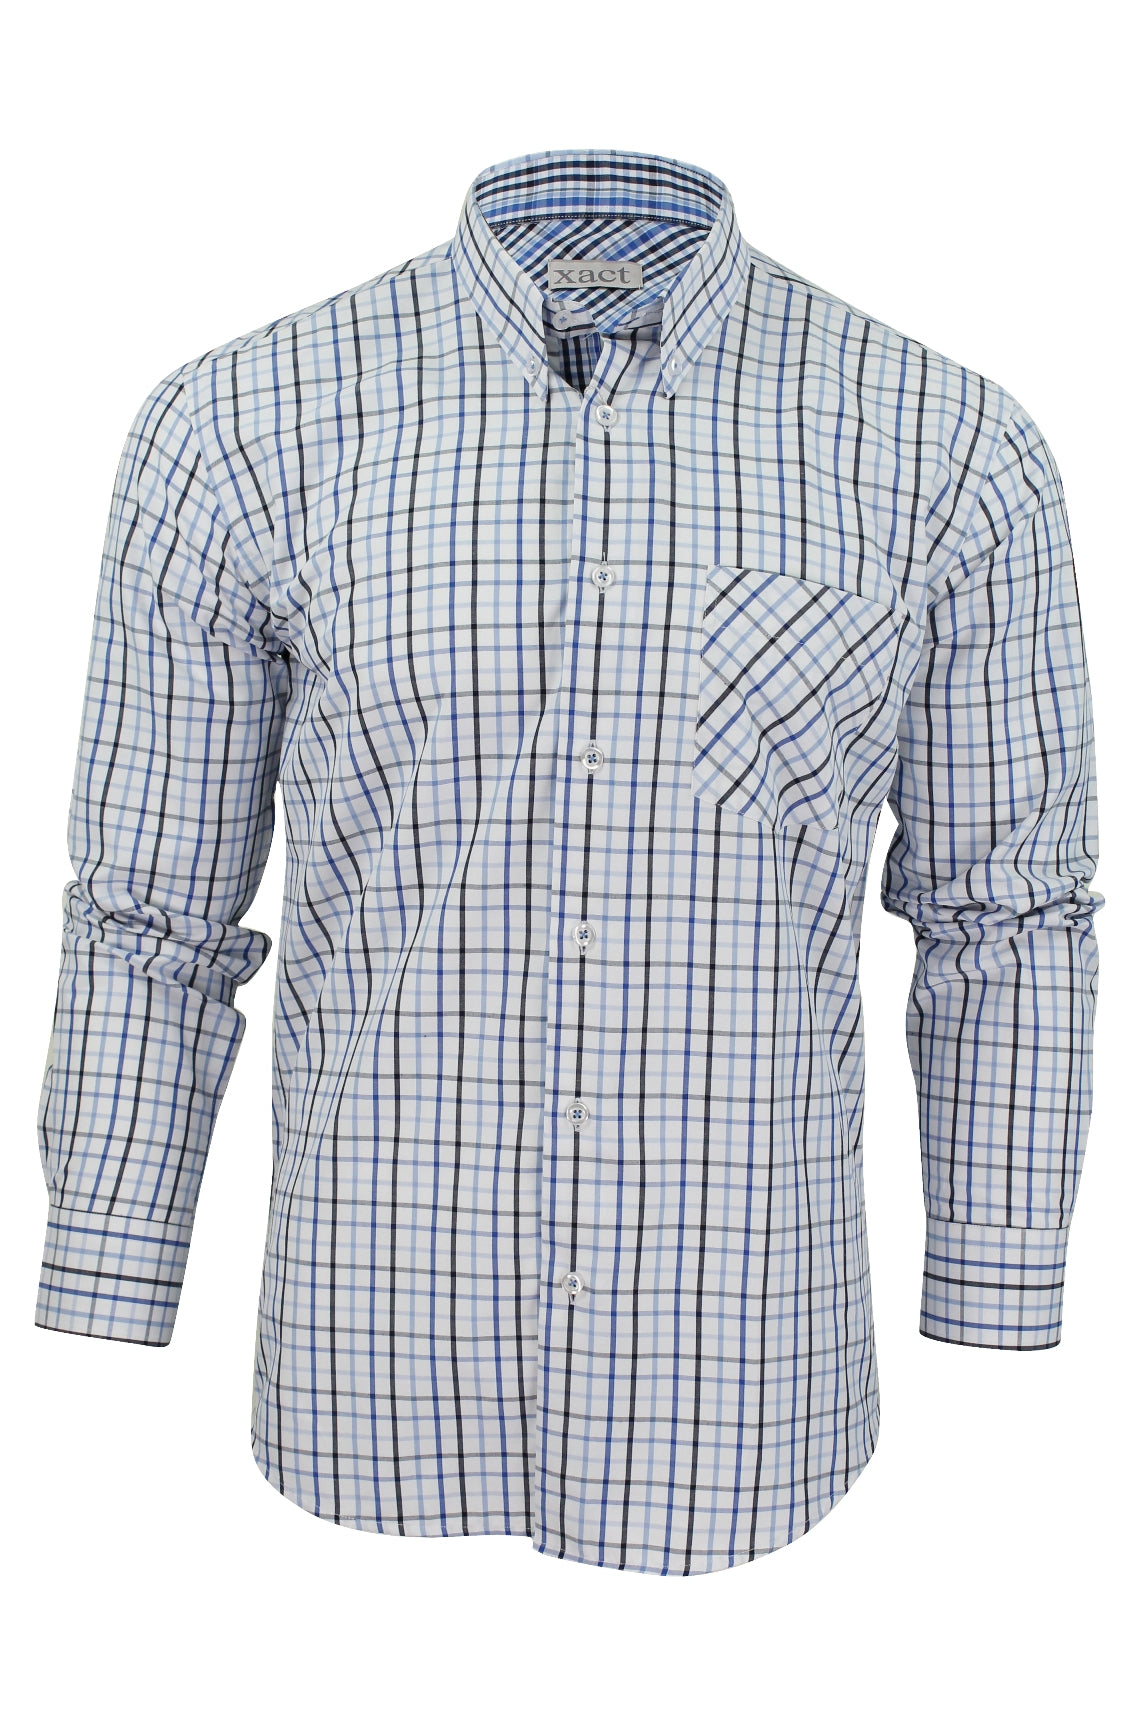 Mens Long Sleeved Check Shirt by Xact Clothing-Main Image